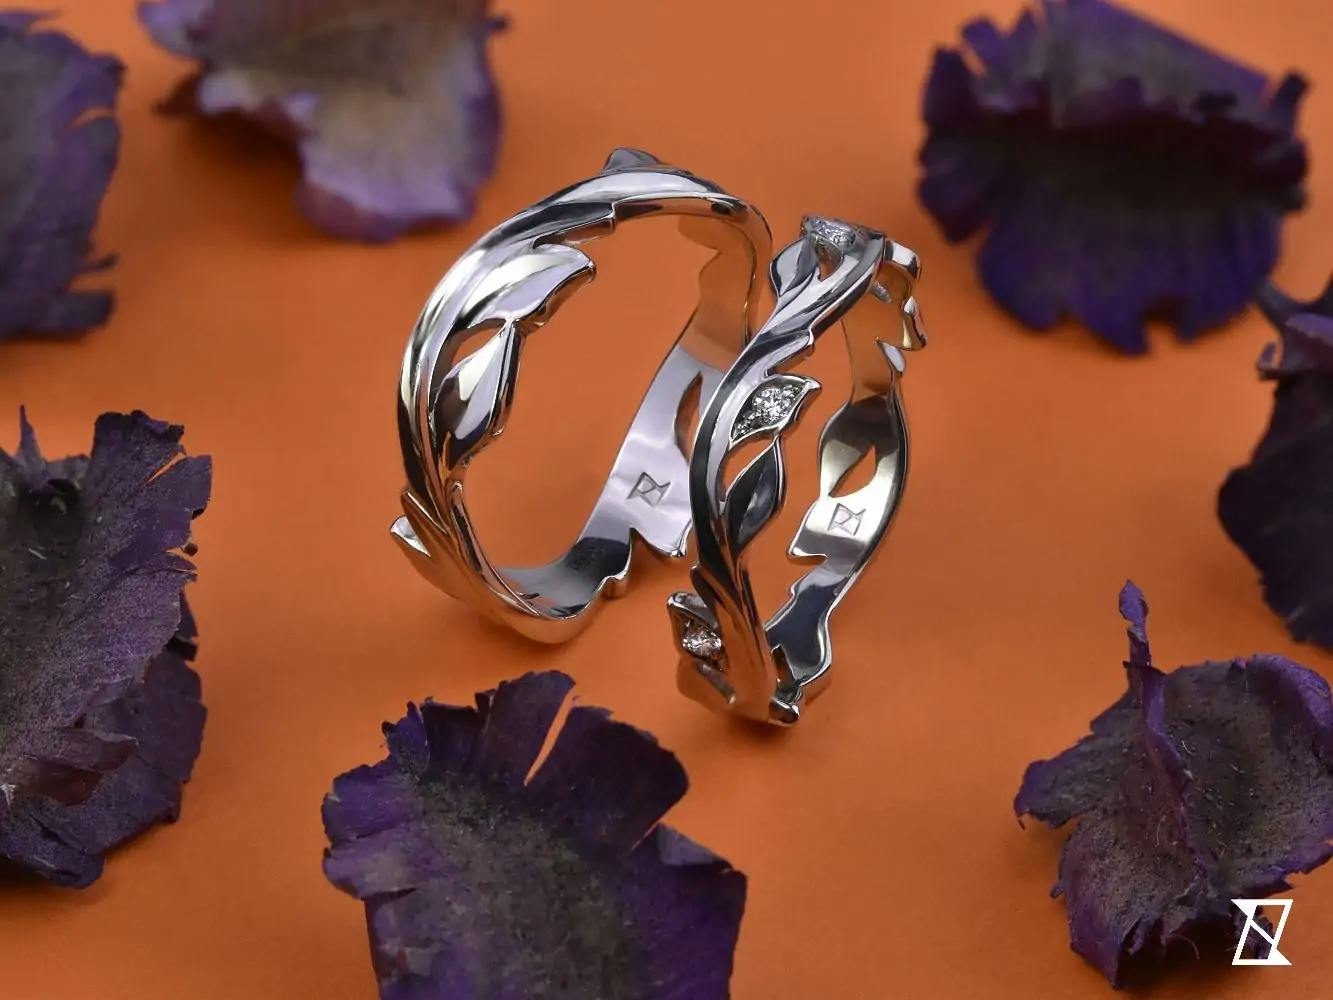 Обручальные кольца с гравированным листьевым мотивом.